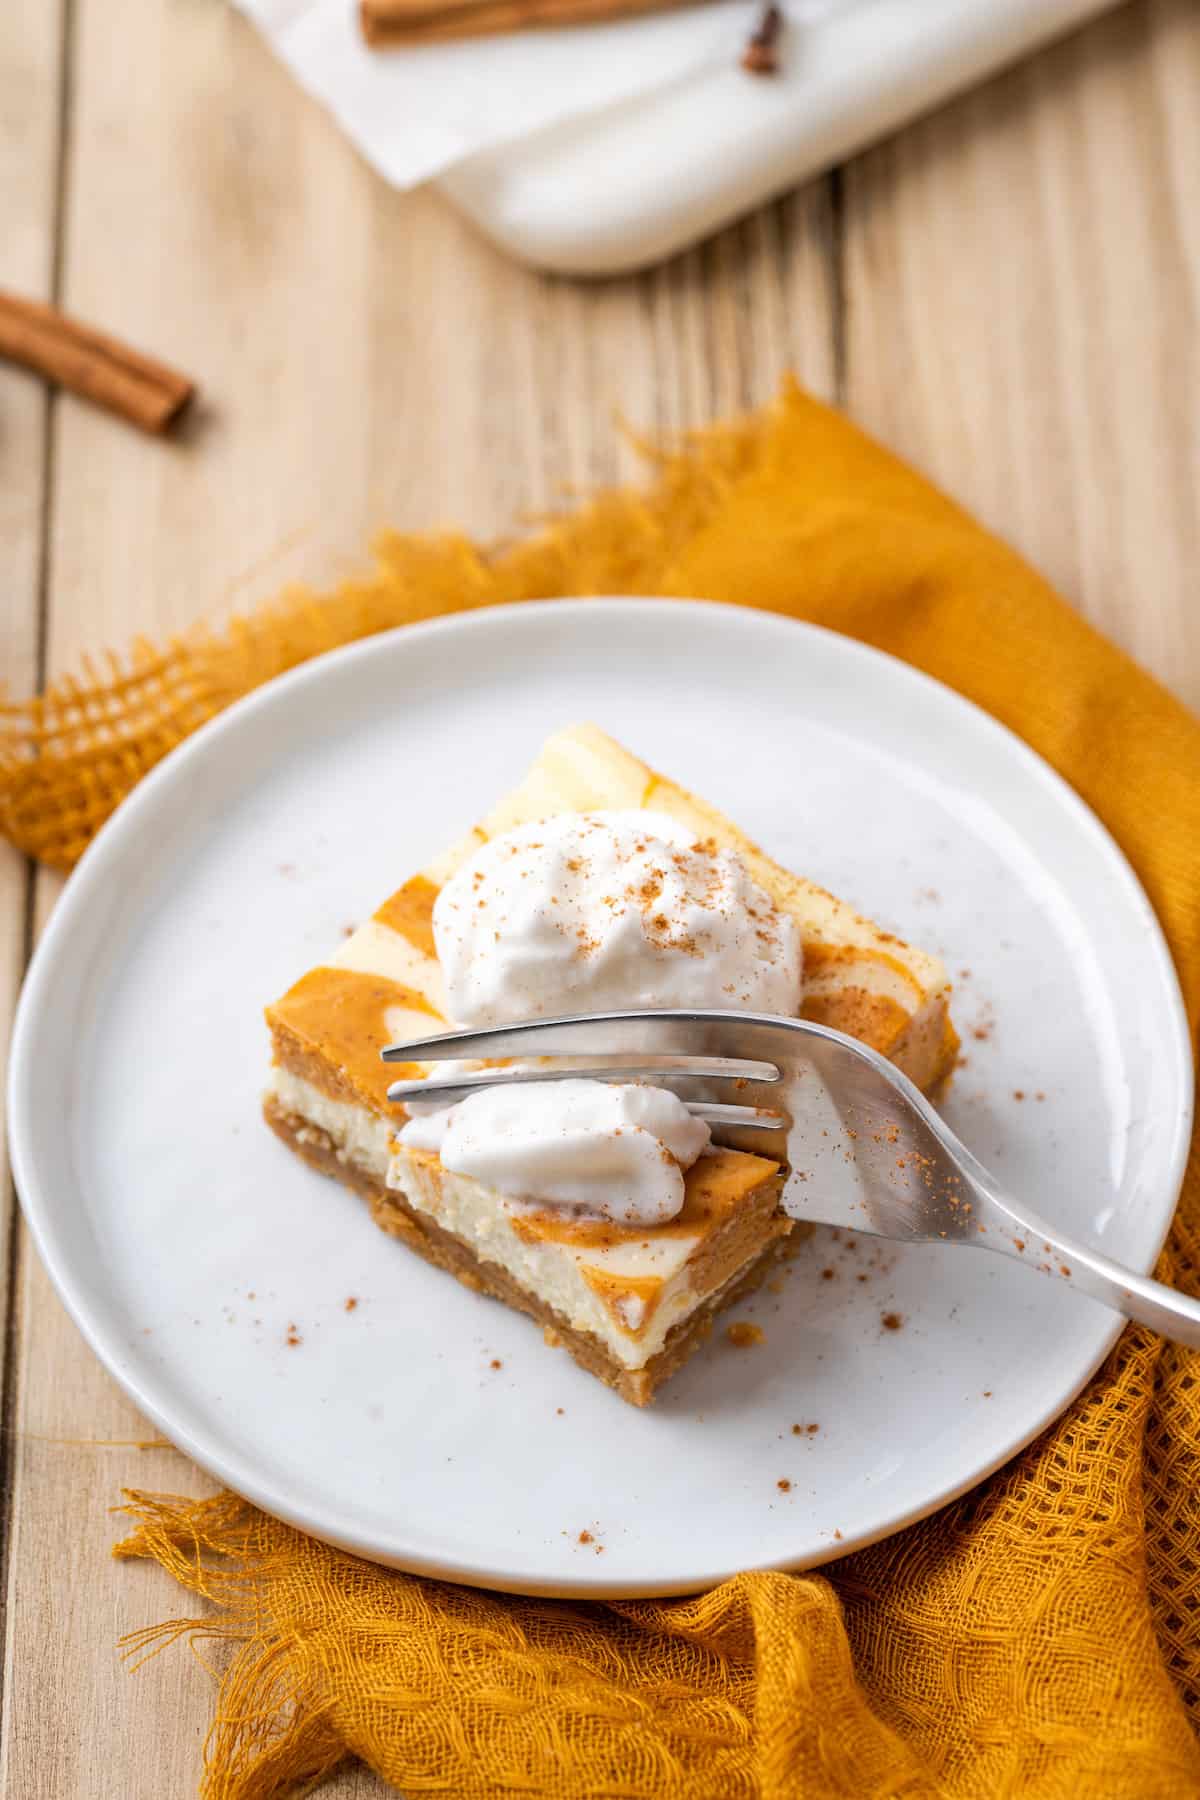 A fork cuts into a pumpkin cream cheese bar on a plate.